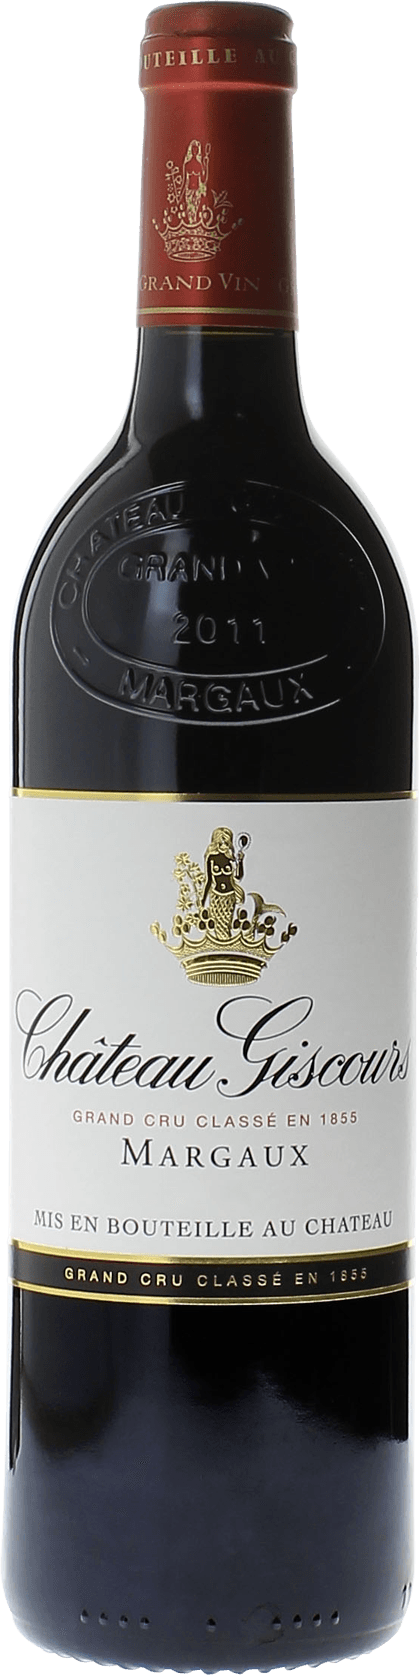 Giscours 2001 3me Grand cru class Margaux, Bordeaux rouge